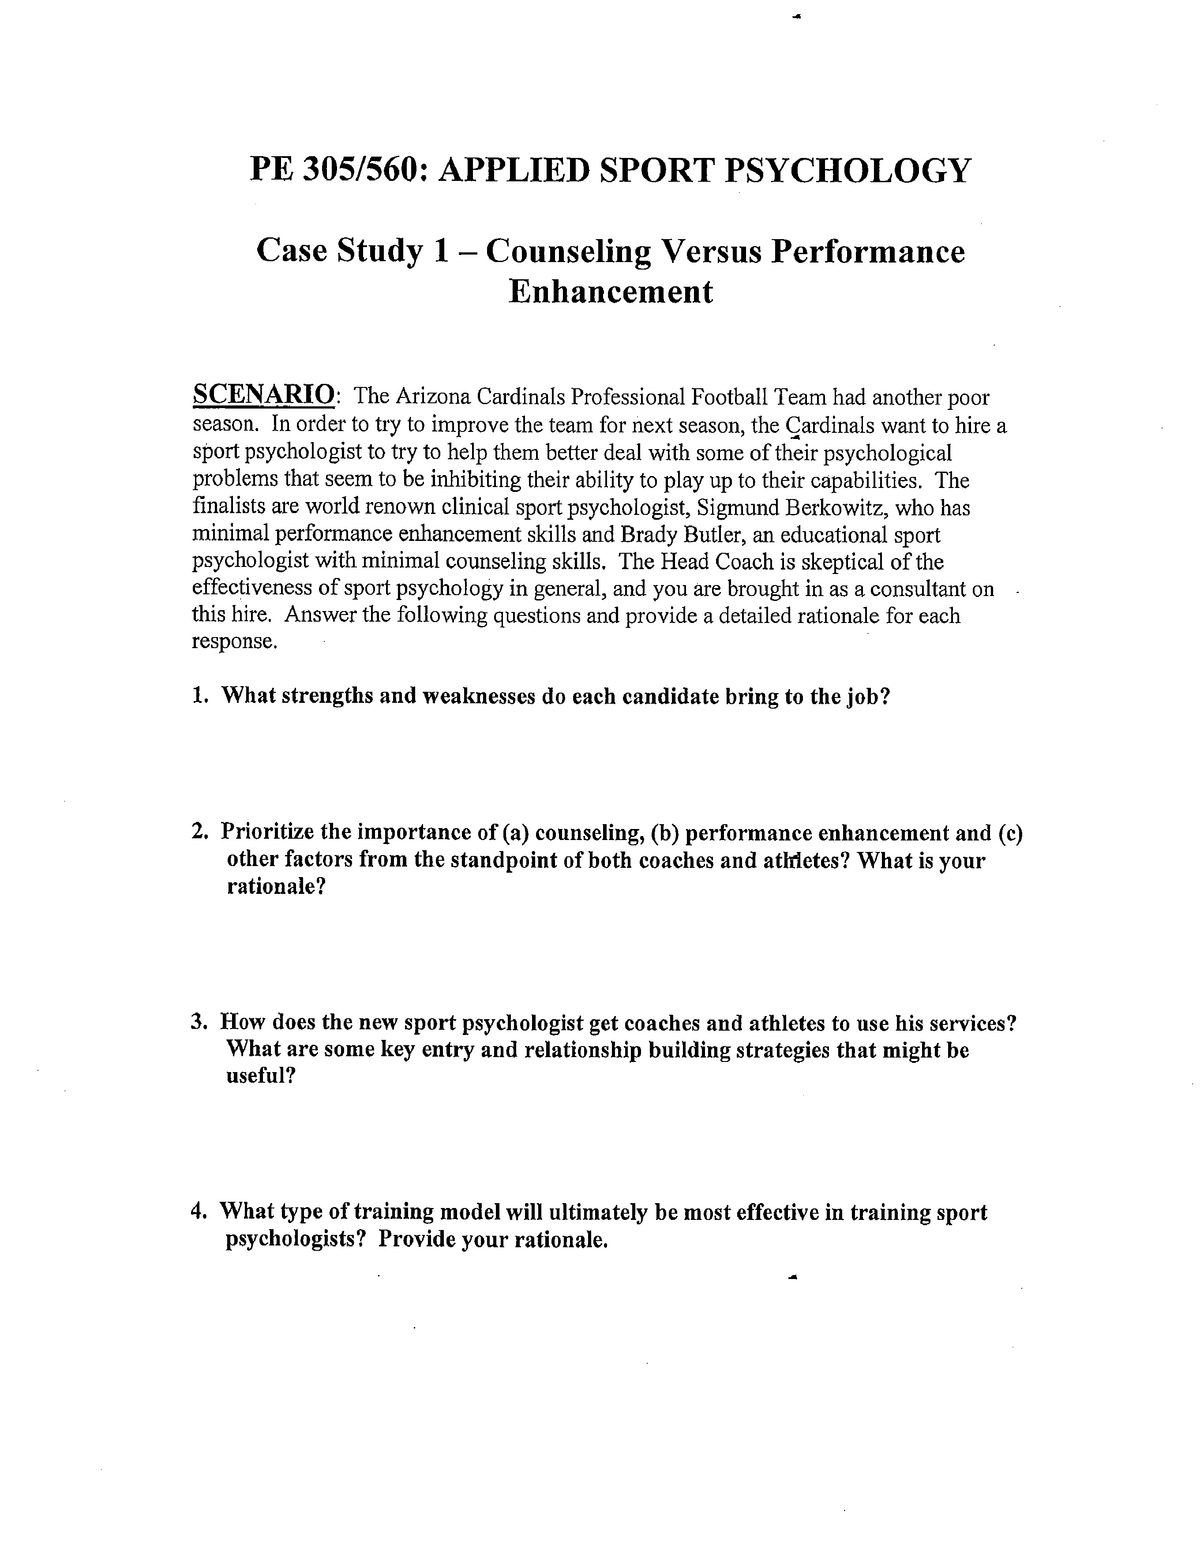 sports psychology case study